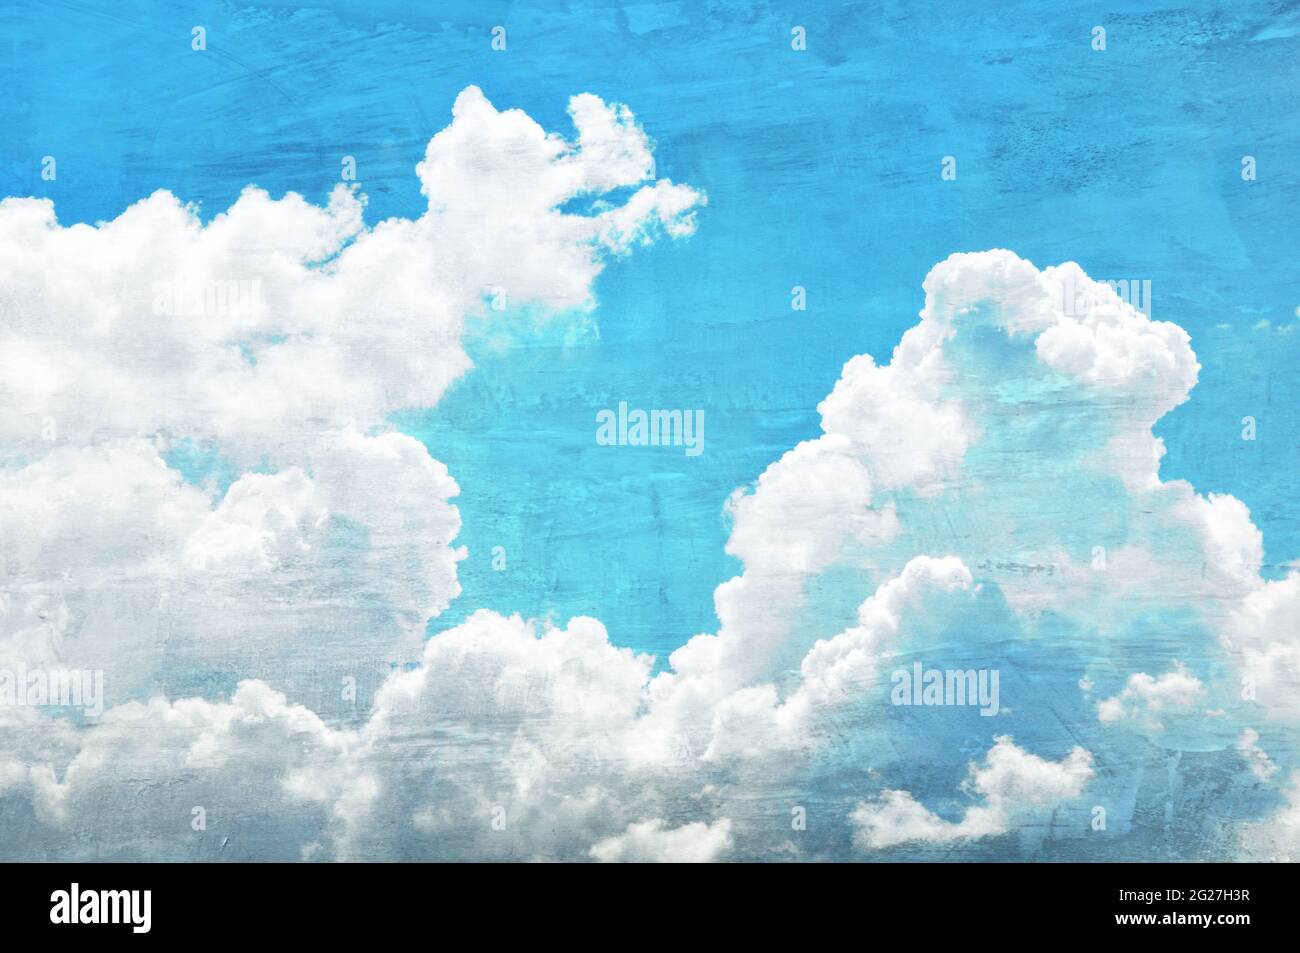 Retro-Stil Bild von blauen Himmel und Wolken Stockfoto